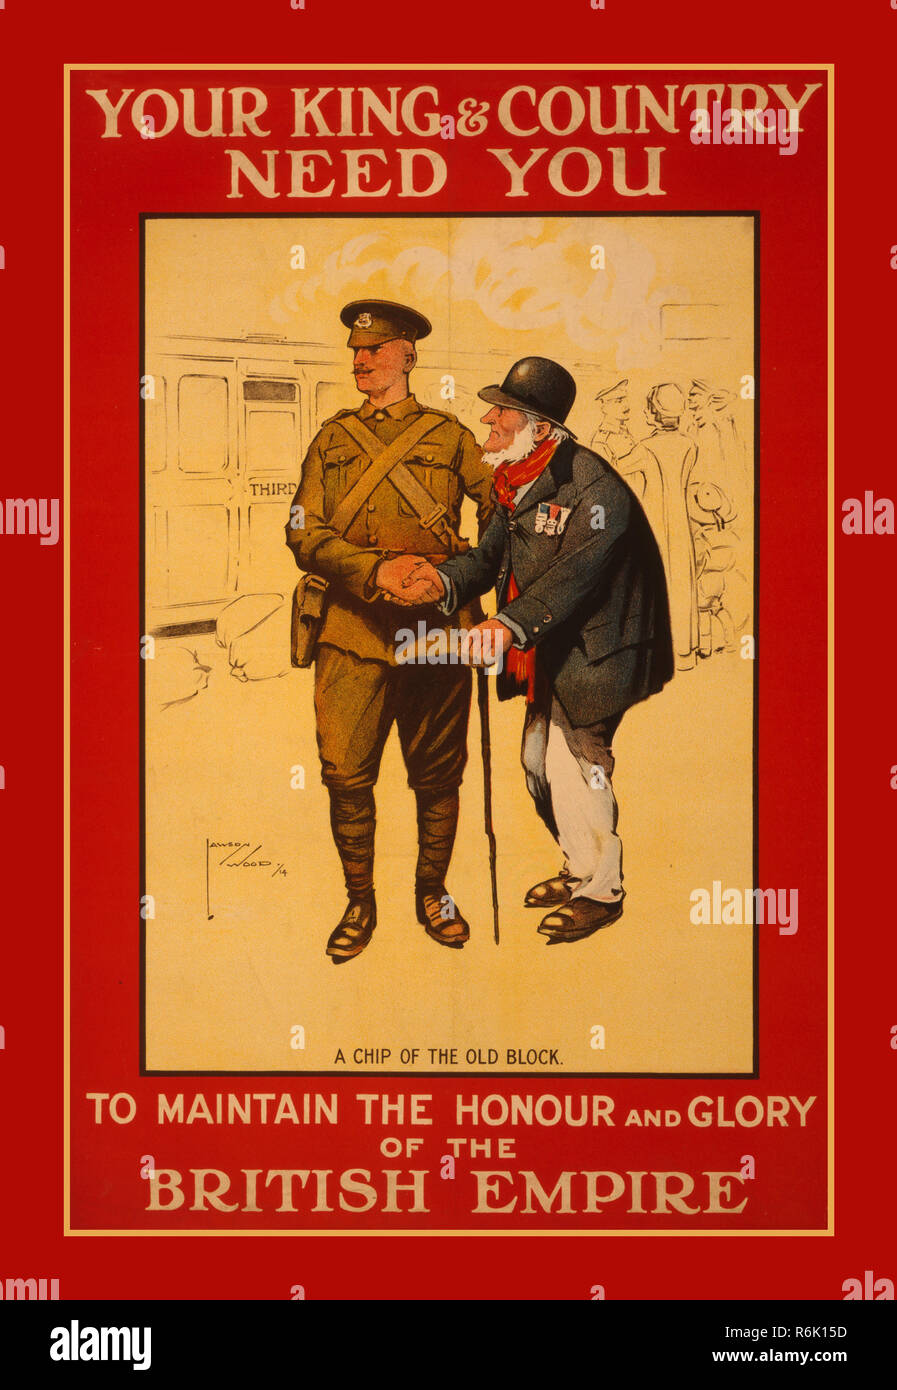 Vintage WW1 British Rekrutierung poster' DEIN KÖNIG & LAND BENÖTIGEN SIE'.....' die Ehre und Herrlichkeit des Britischen Empire" Poster, auf dem ein alter Veteran zu erhalten, seine Dekorationen tragen, das Händeschütteln mit ein junger Soldat 1914 Weltkrieg 1 UK Stockfoto